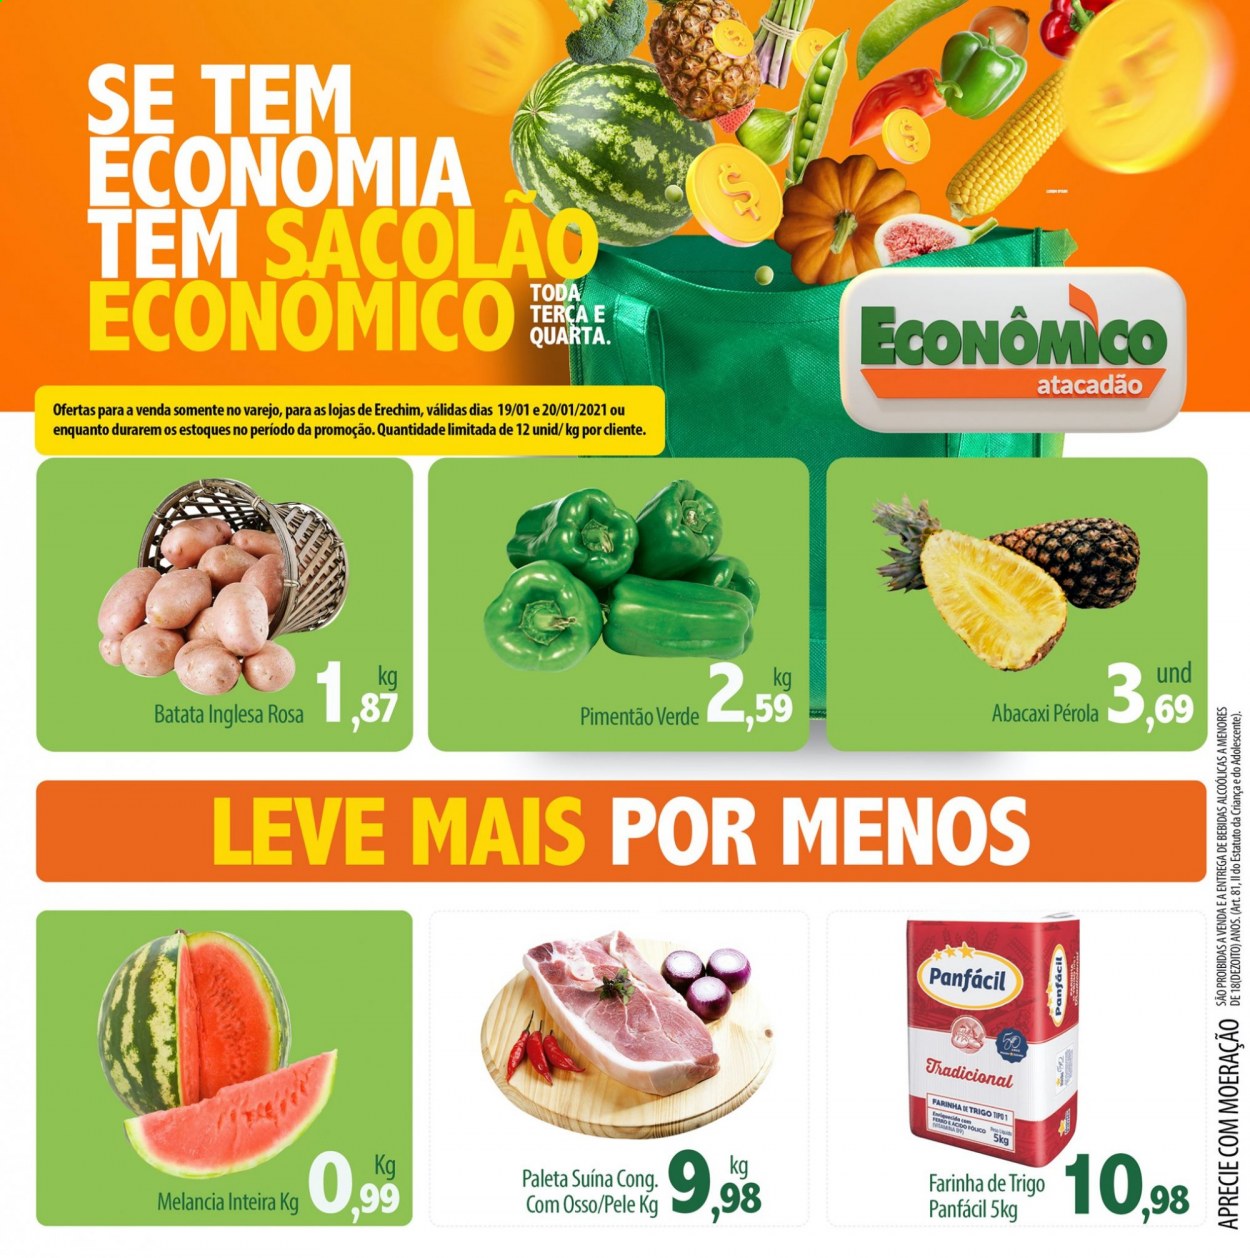 thumbnail - Folheto Econômico Atacadão - 19/01/2021 - 20/01/2021 - Produtos em promoção - abacaxi, melancia, batata, pimentão verde, farinha, farinha de trigo. Página 1.